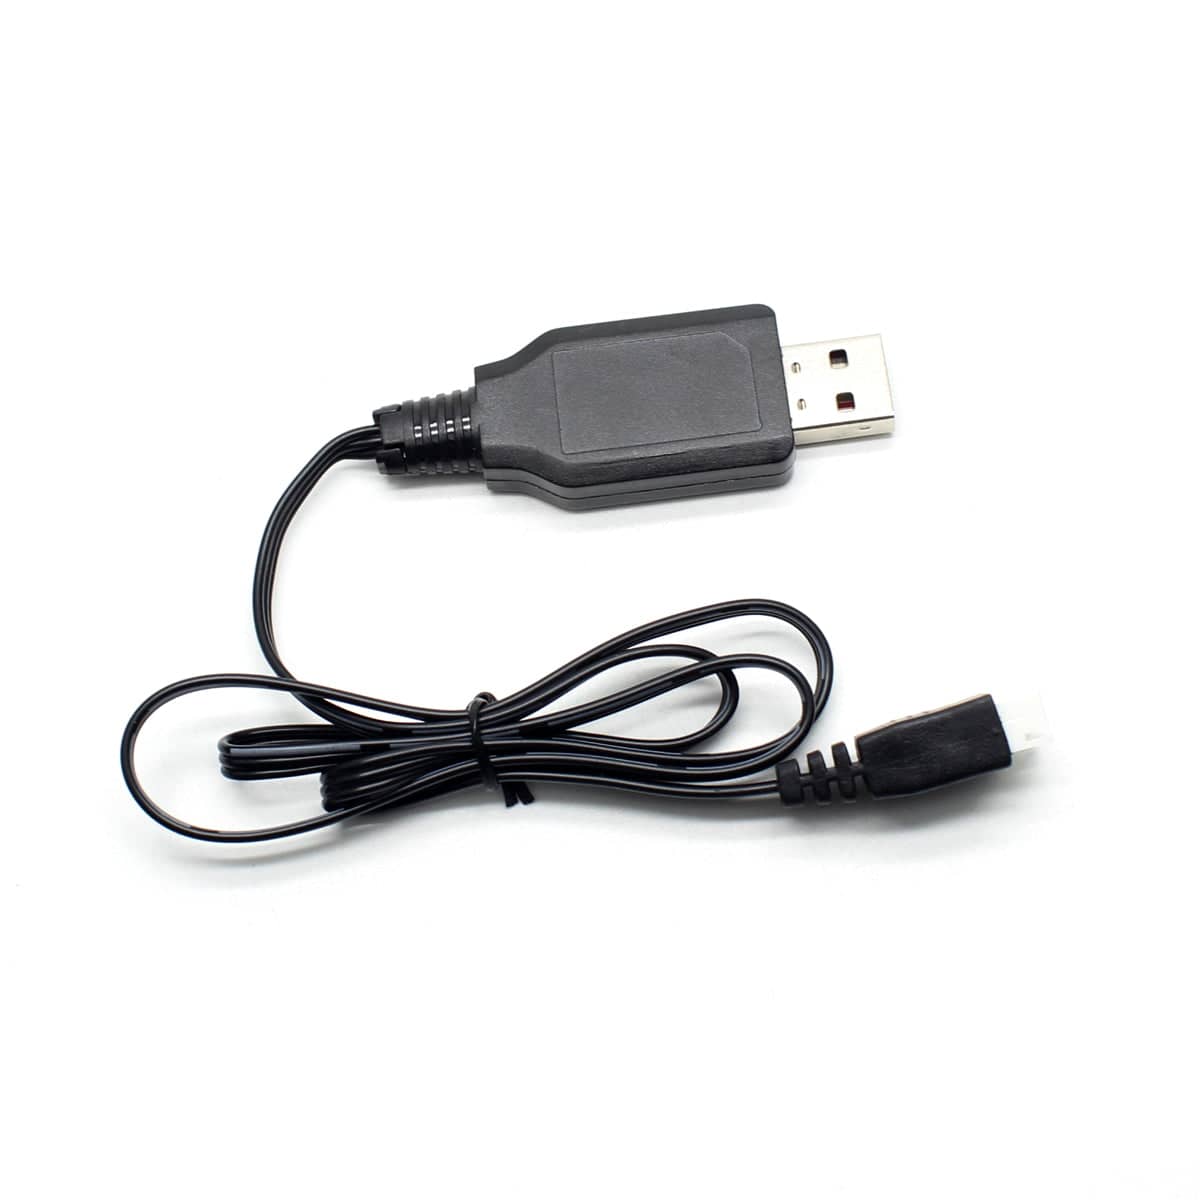 HOSIM RC Car 7.4V USB Charger 1:16 Scale  30-DJ04 for Hosim 9130 9125 9155 9156